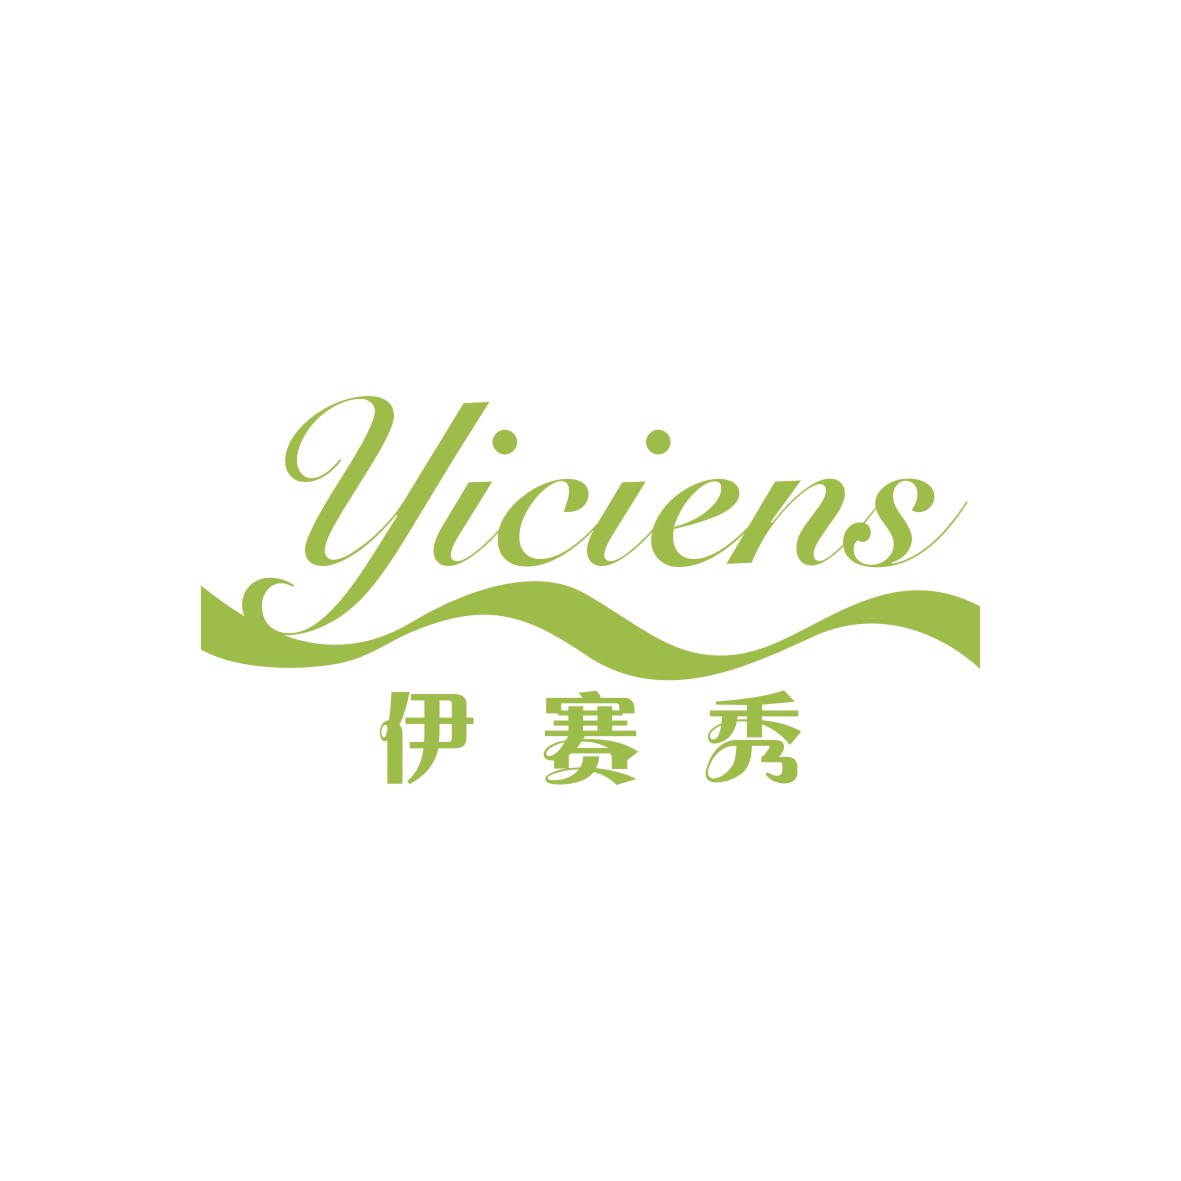 广州品翰文化发展有限公司商标伊赛秀 YICIENS（03类）商标买卖平台报价，上哪个平台最省钱？